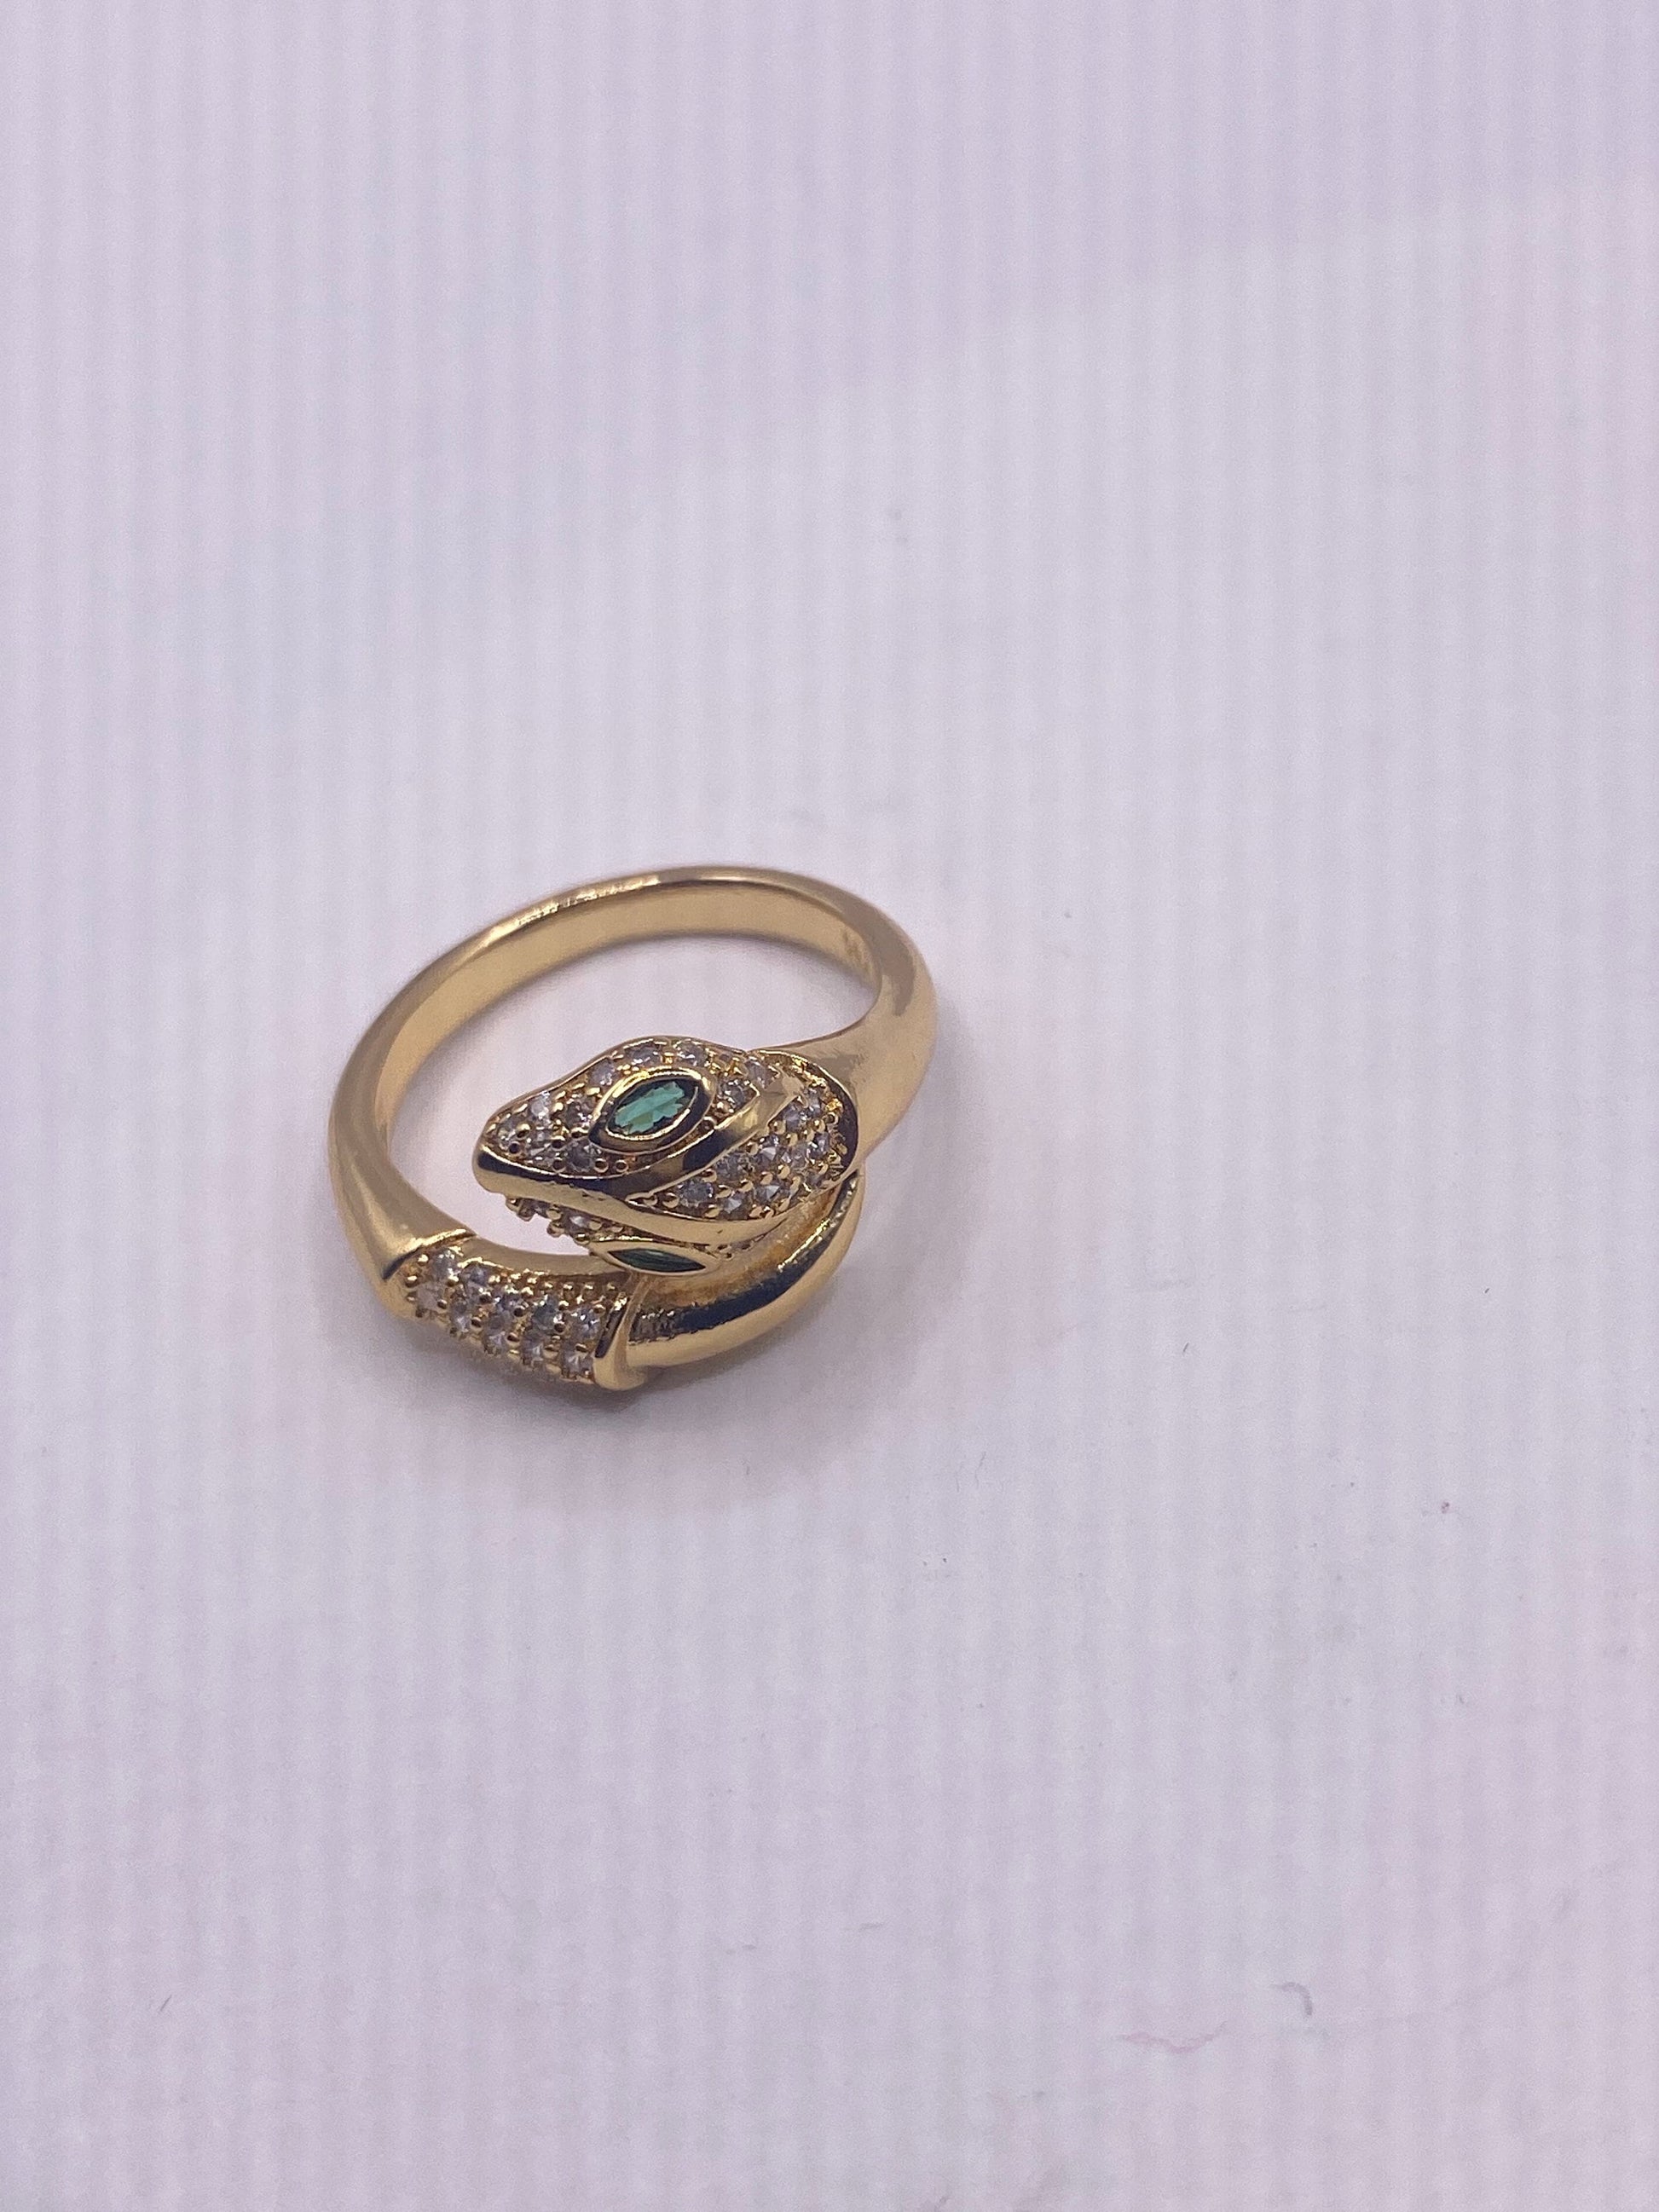 Vintage Snake Ring Gold Filled Crystal Cocktail Ring